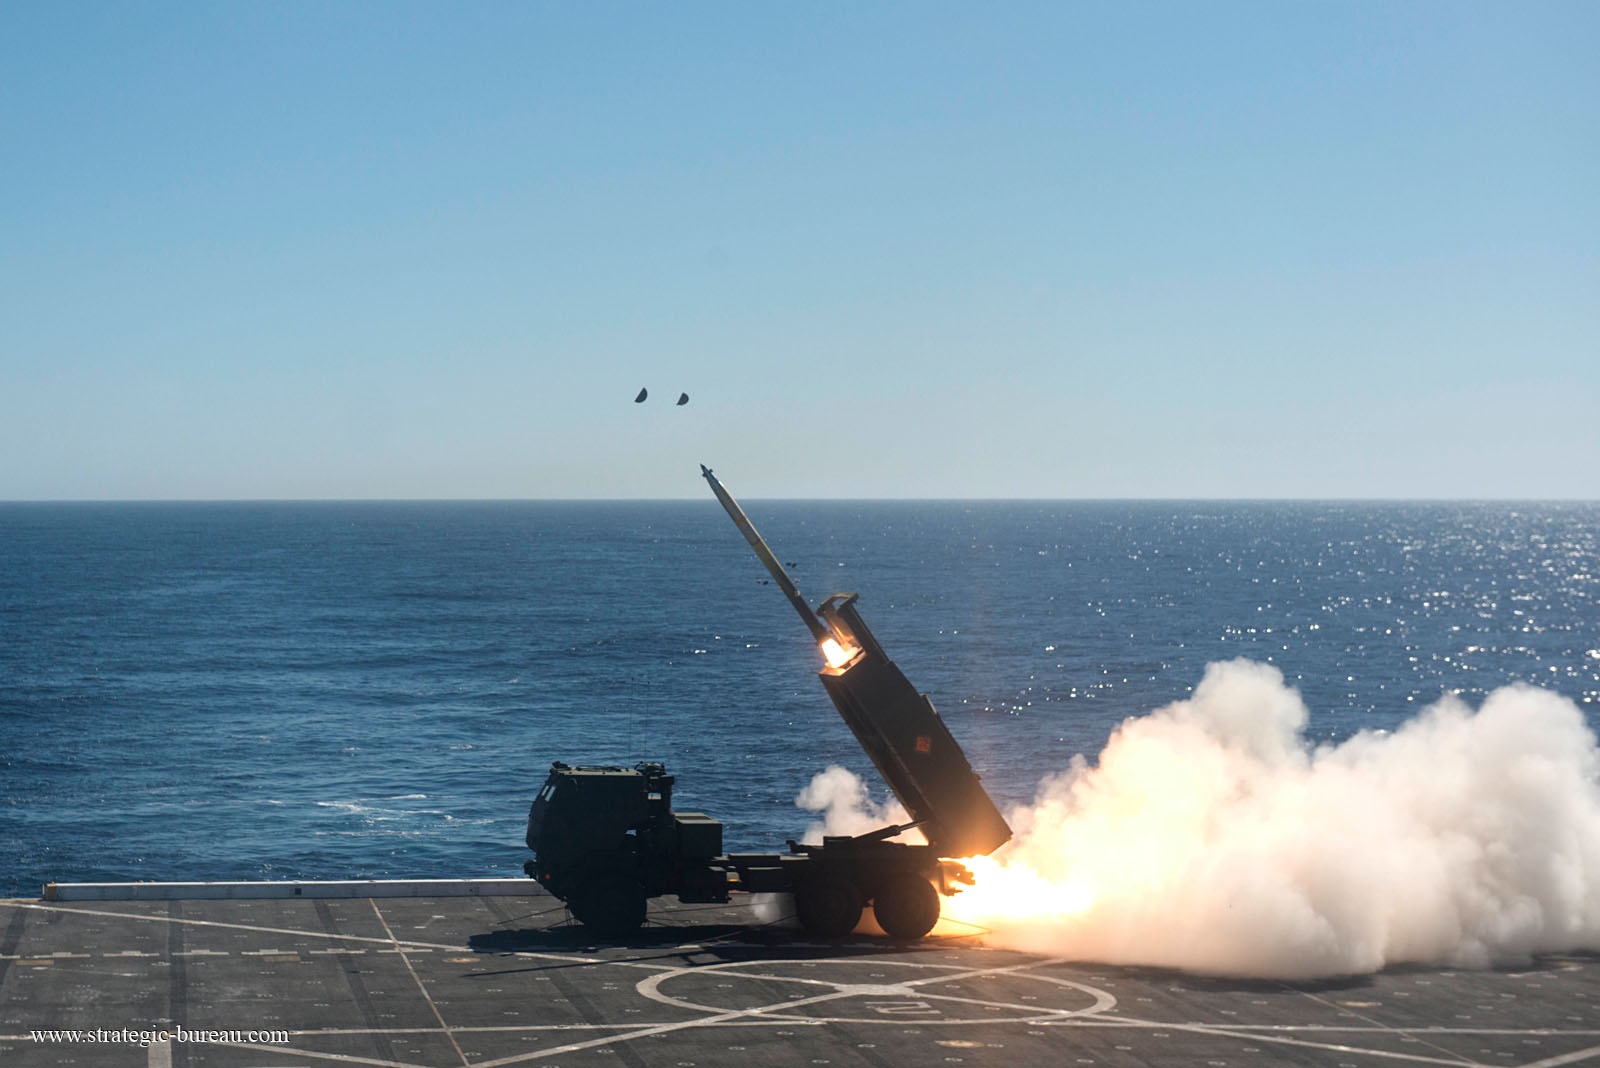 Pháo phản lực cơ động cao (HIMARS) phóng tên lửa từ tàu chiến Mỹ ở Thái Bình Dương. Ảnh: Strategic Bureau.